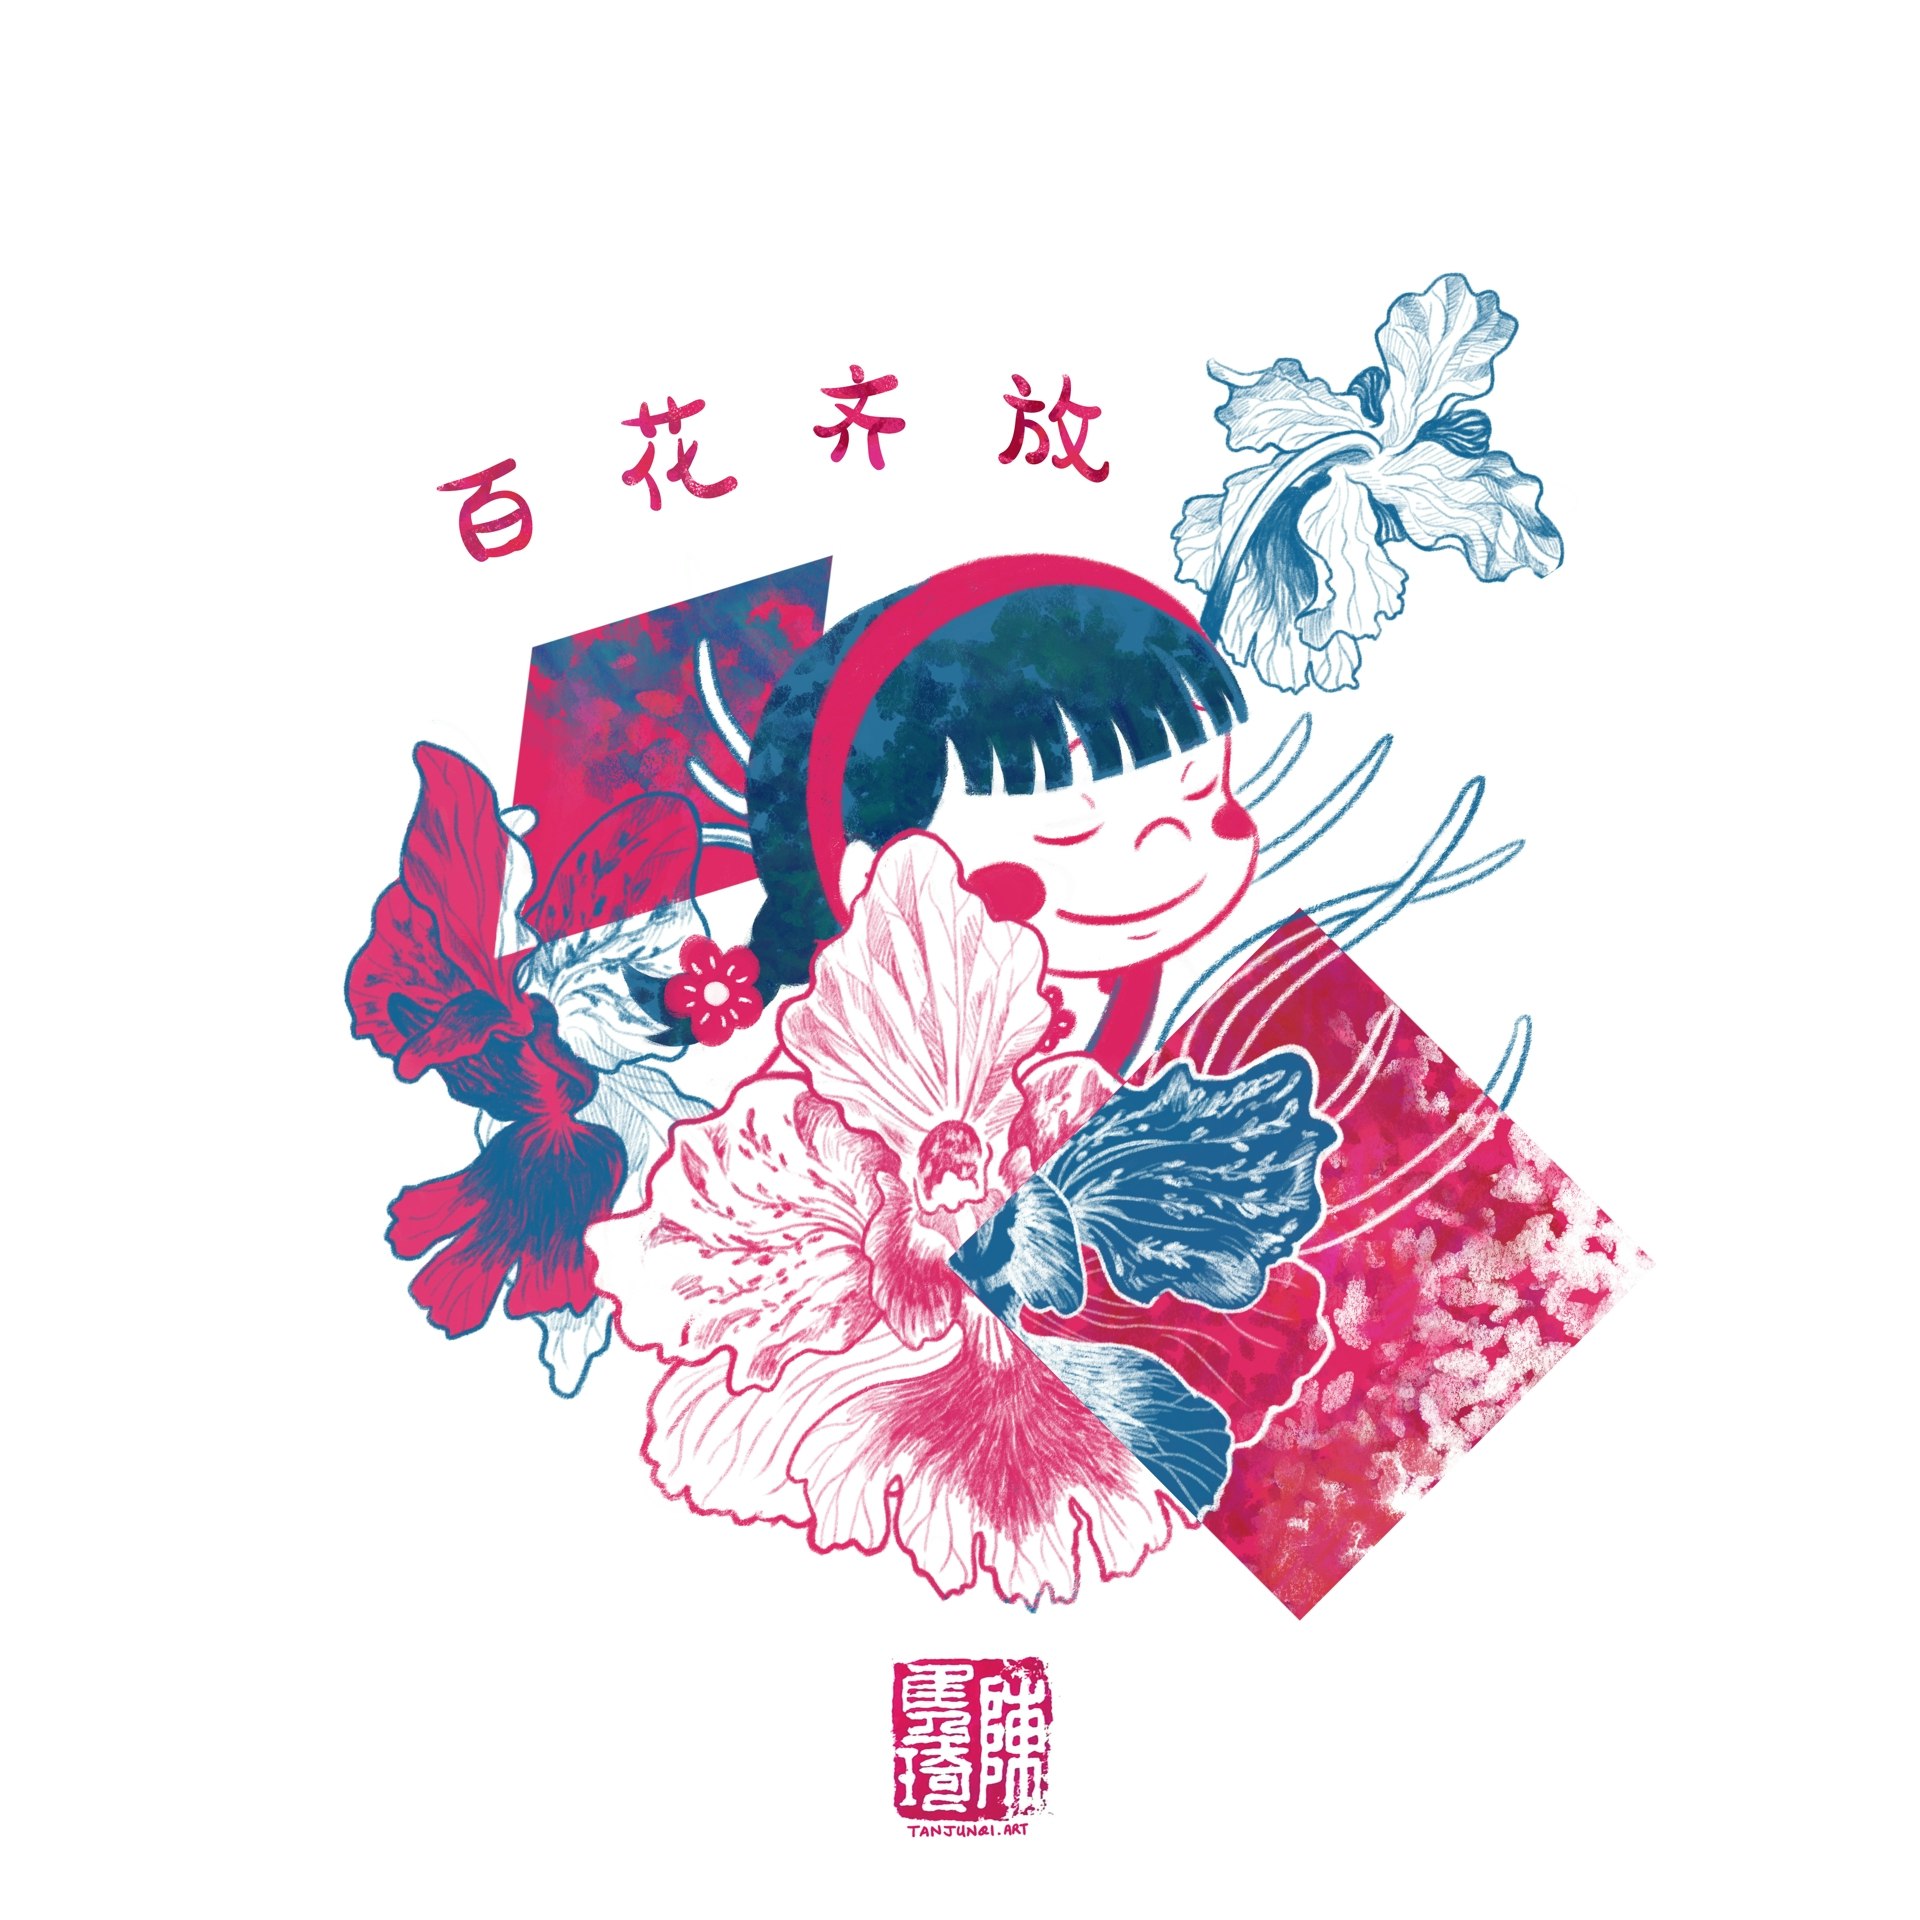 数码插画，以深粉红和藏青色为色彩方案，描绘的是小女孩珊珊从兰花丛中露出来。上方写着「百花齐放」四个字